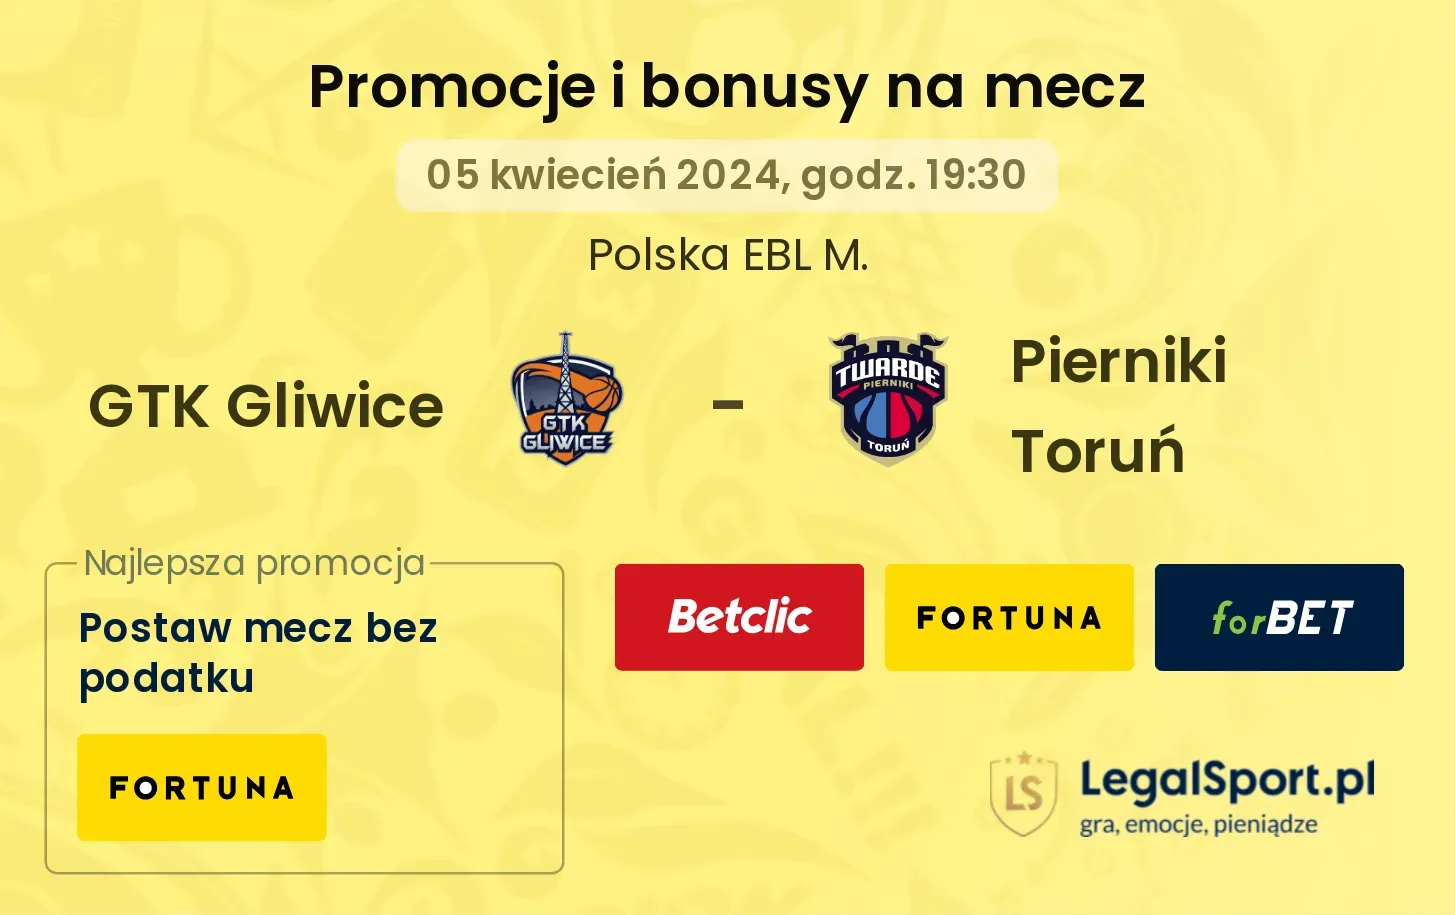 GTK Gliwice - Pierniki Toruń promocje bonusy na mecz